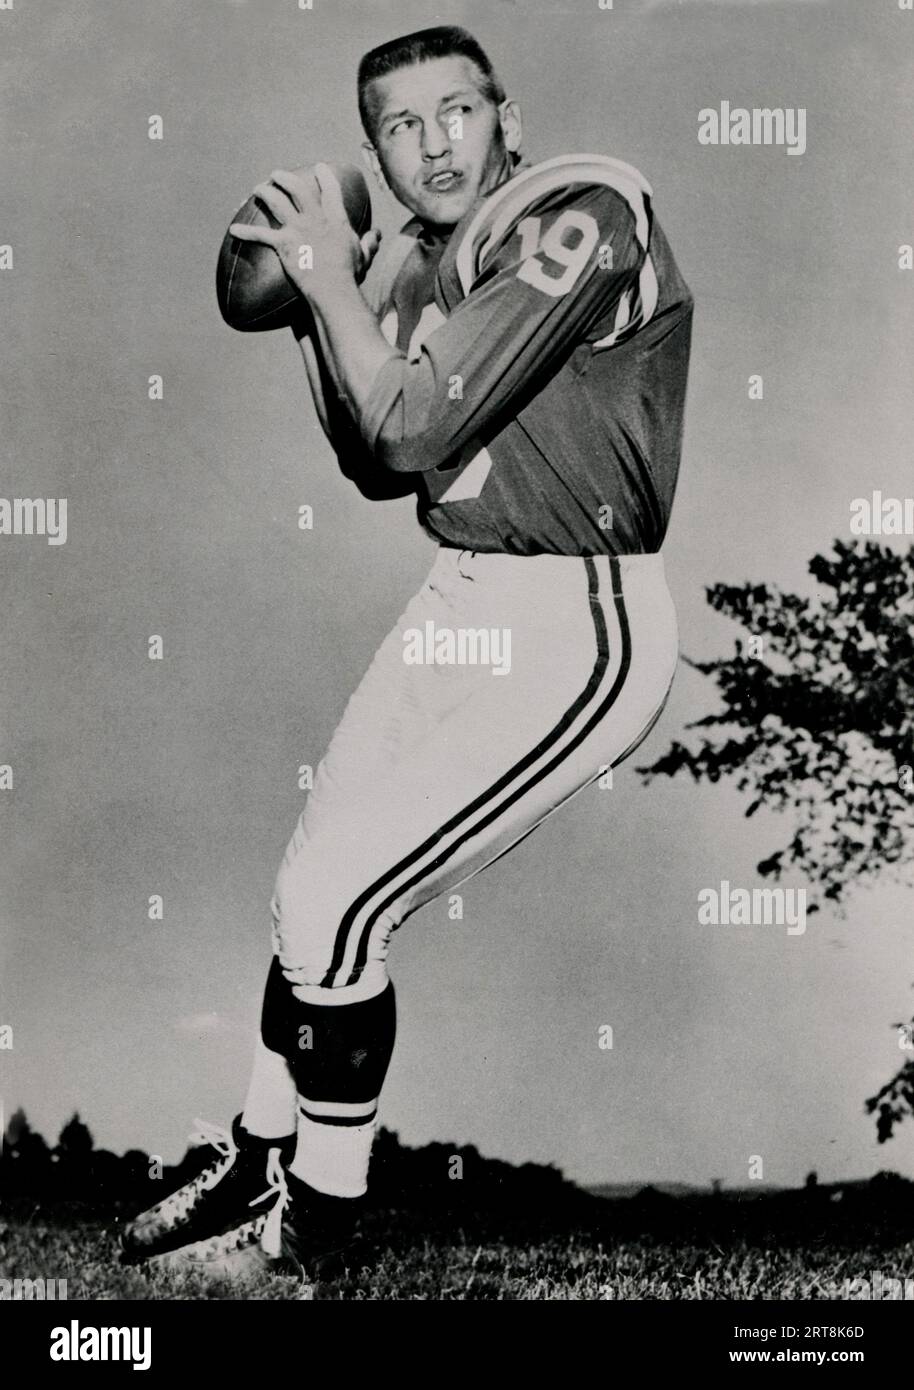 Una fotografia pubblicitaria del quarterback professionista Johnny Unitas che giocò con i Baltimore Colts dal 1956 al 1972. Foto Stock